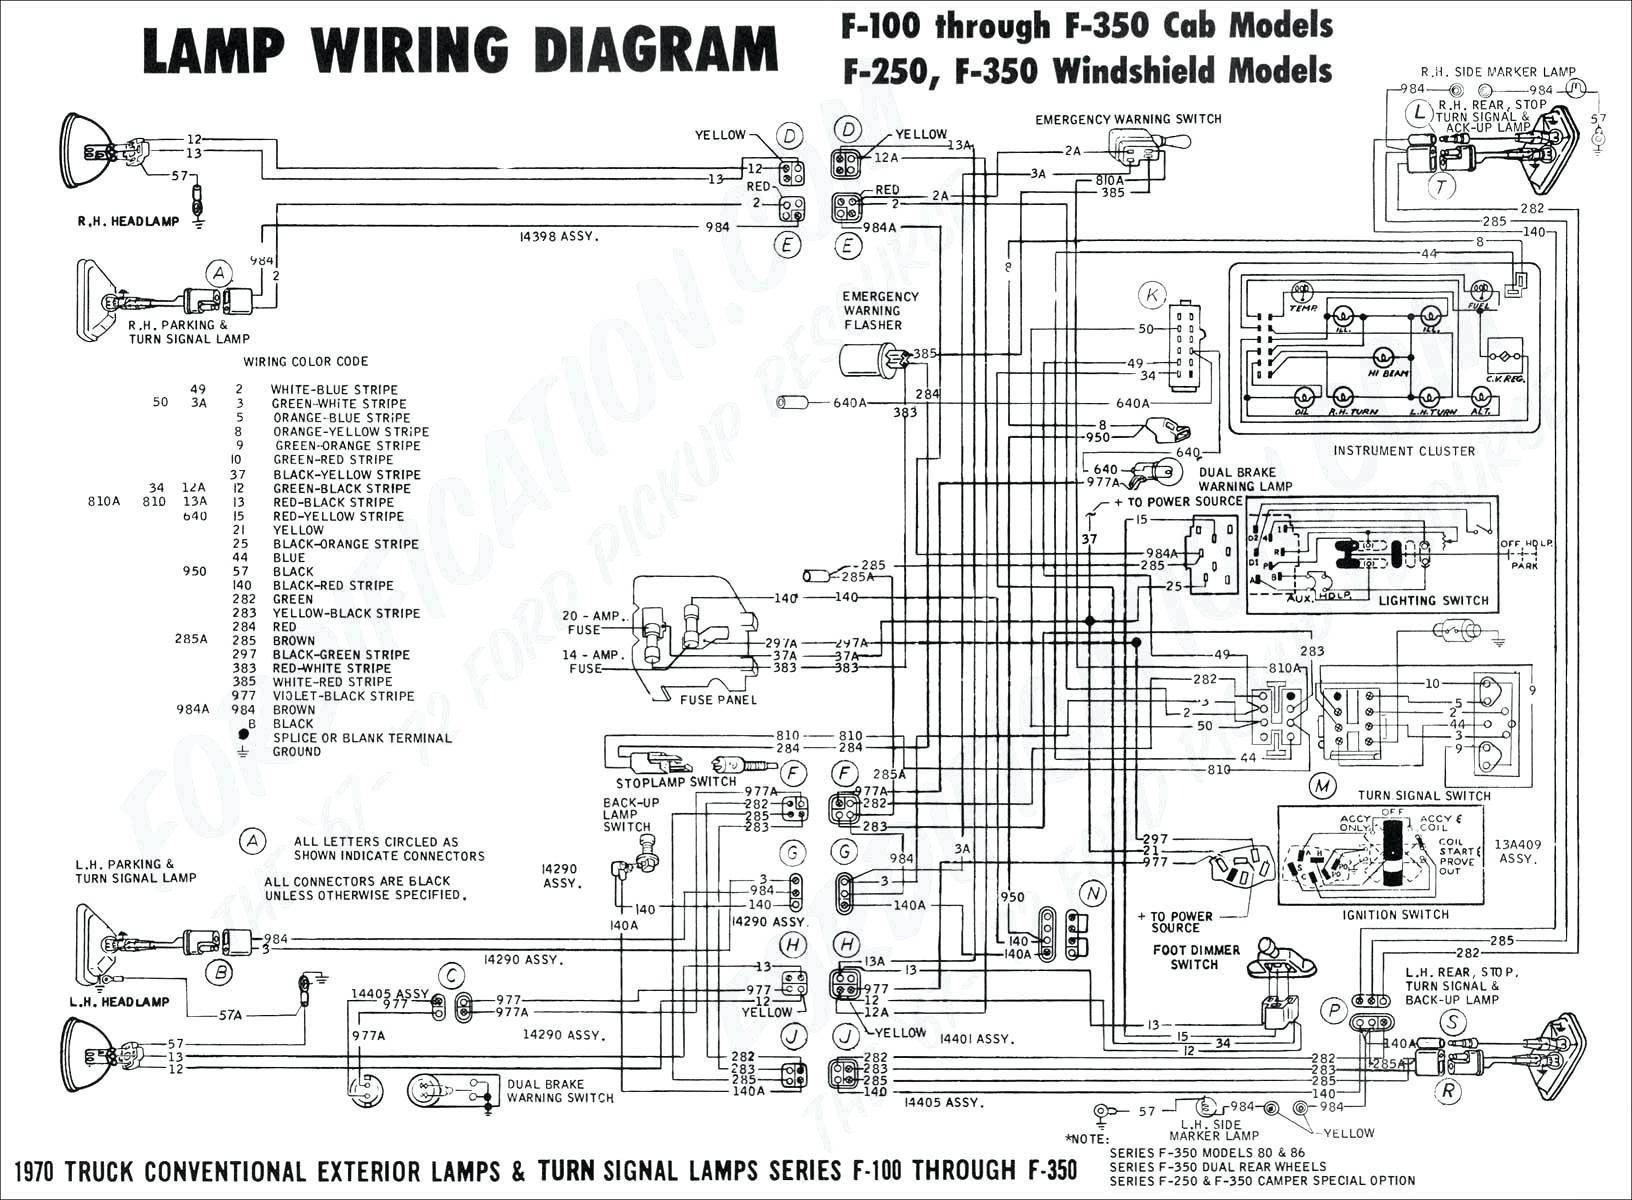 1999 Nissan Altima Wiring Diagram Fresh Audi A4 Radio Wiring Diagram 93 Pathfinder Radio Wire Schematic Nissan Altima Radio Wiring Diagram